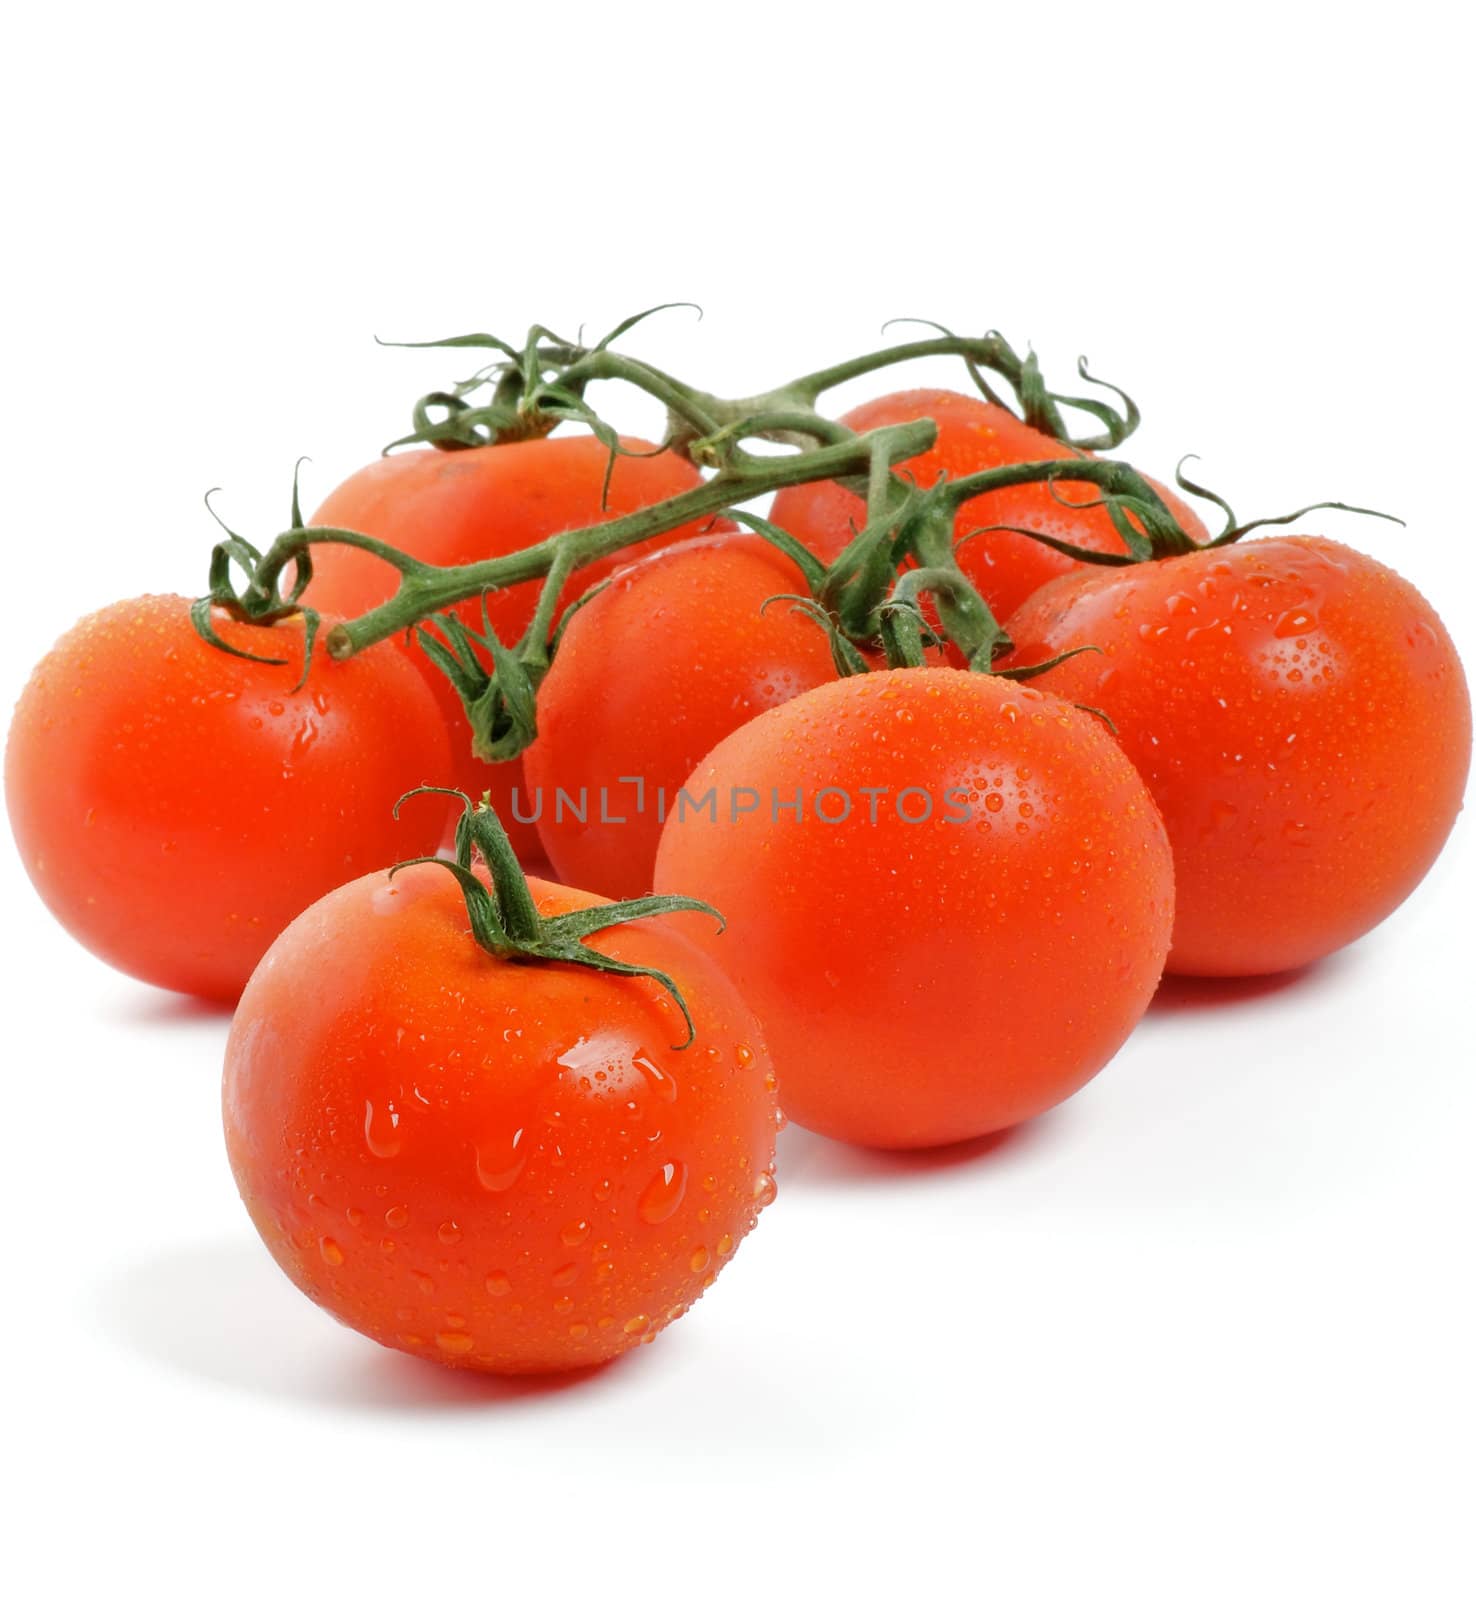 Tomatoes on twigs by zhekos